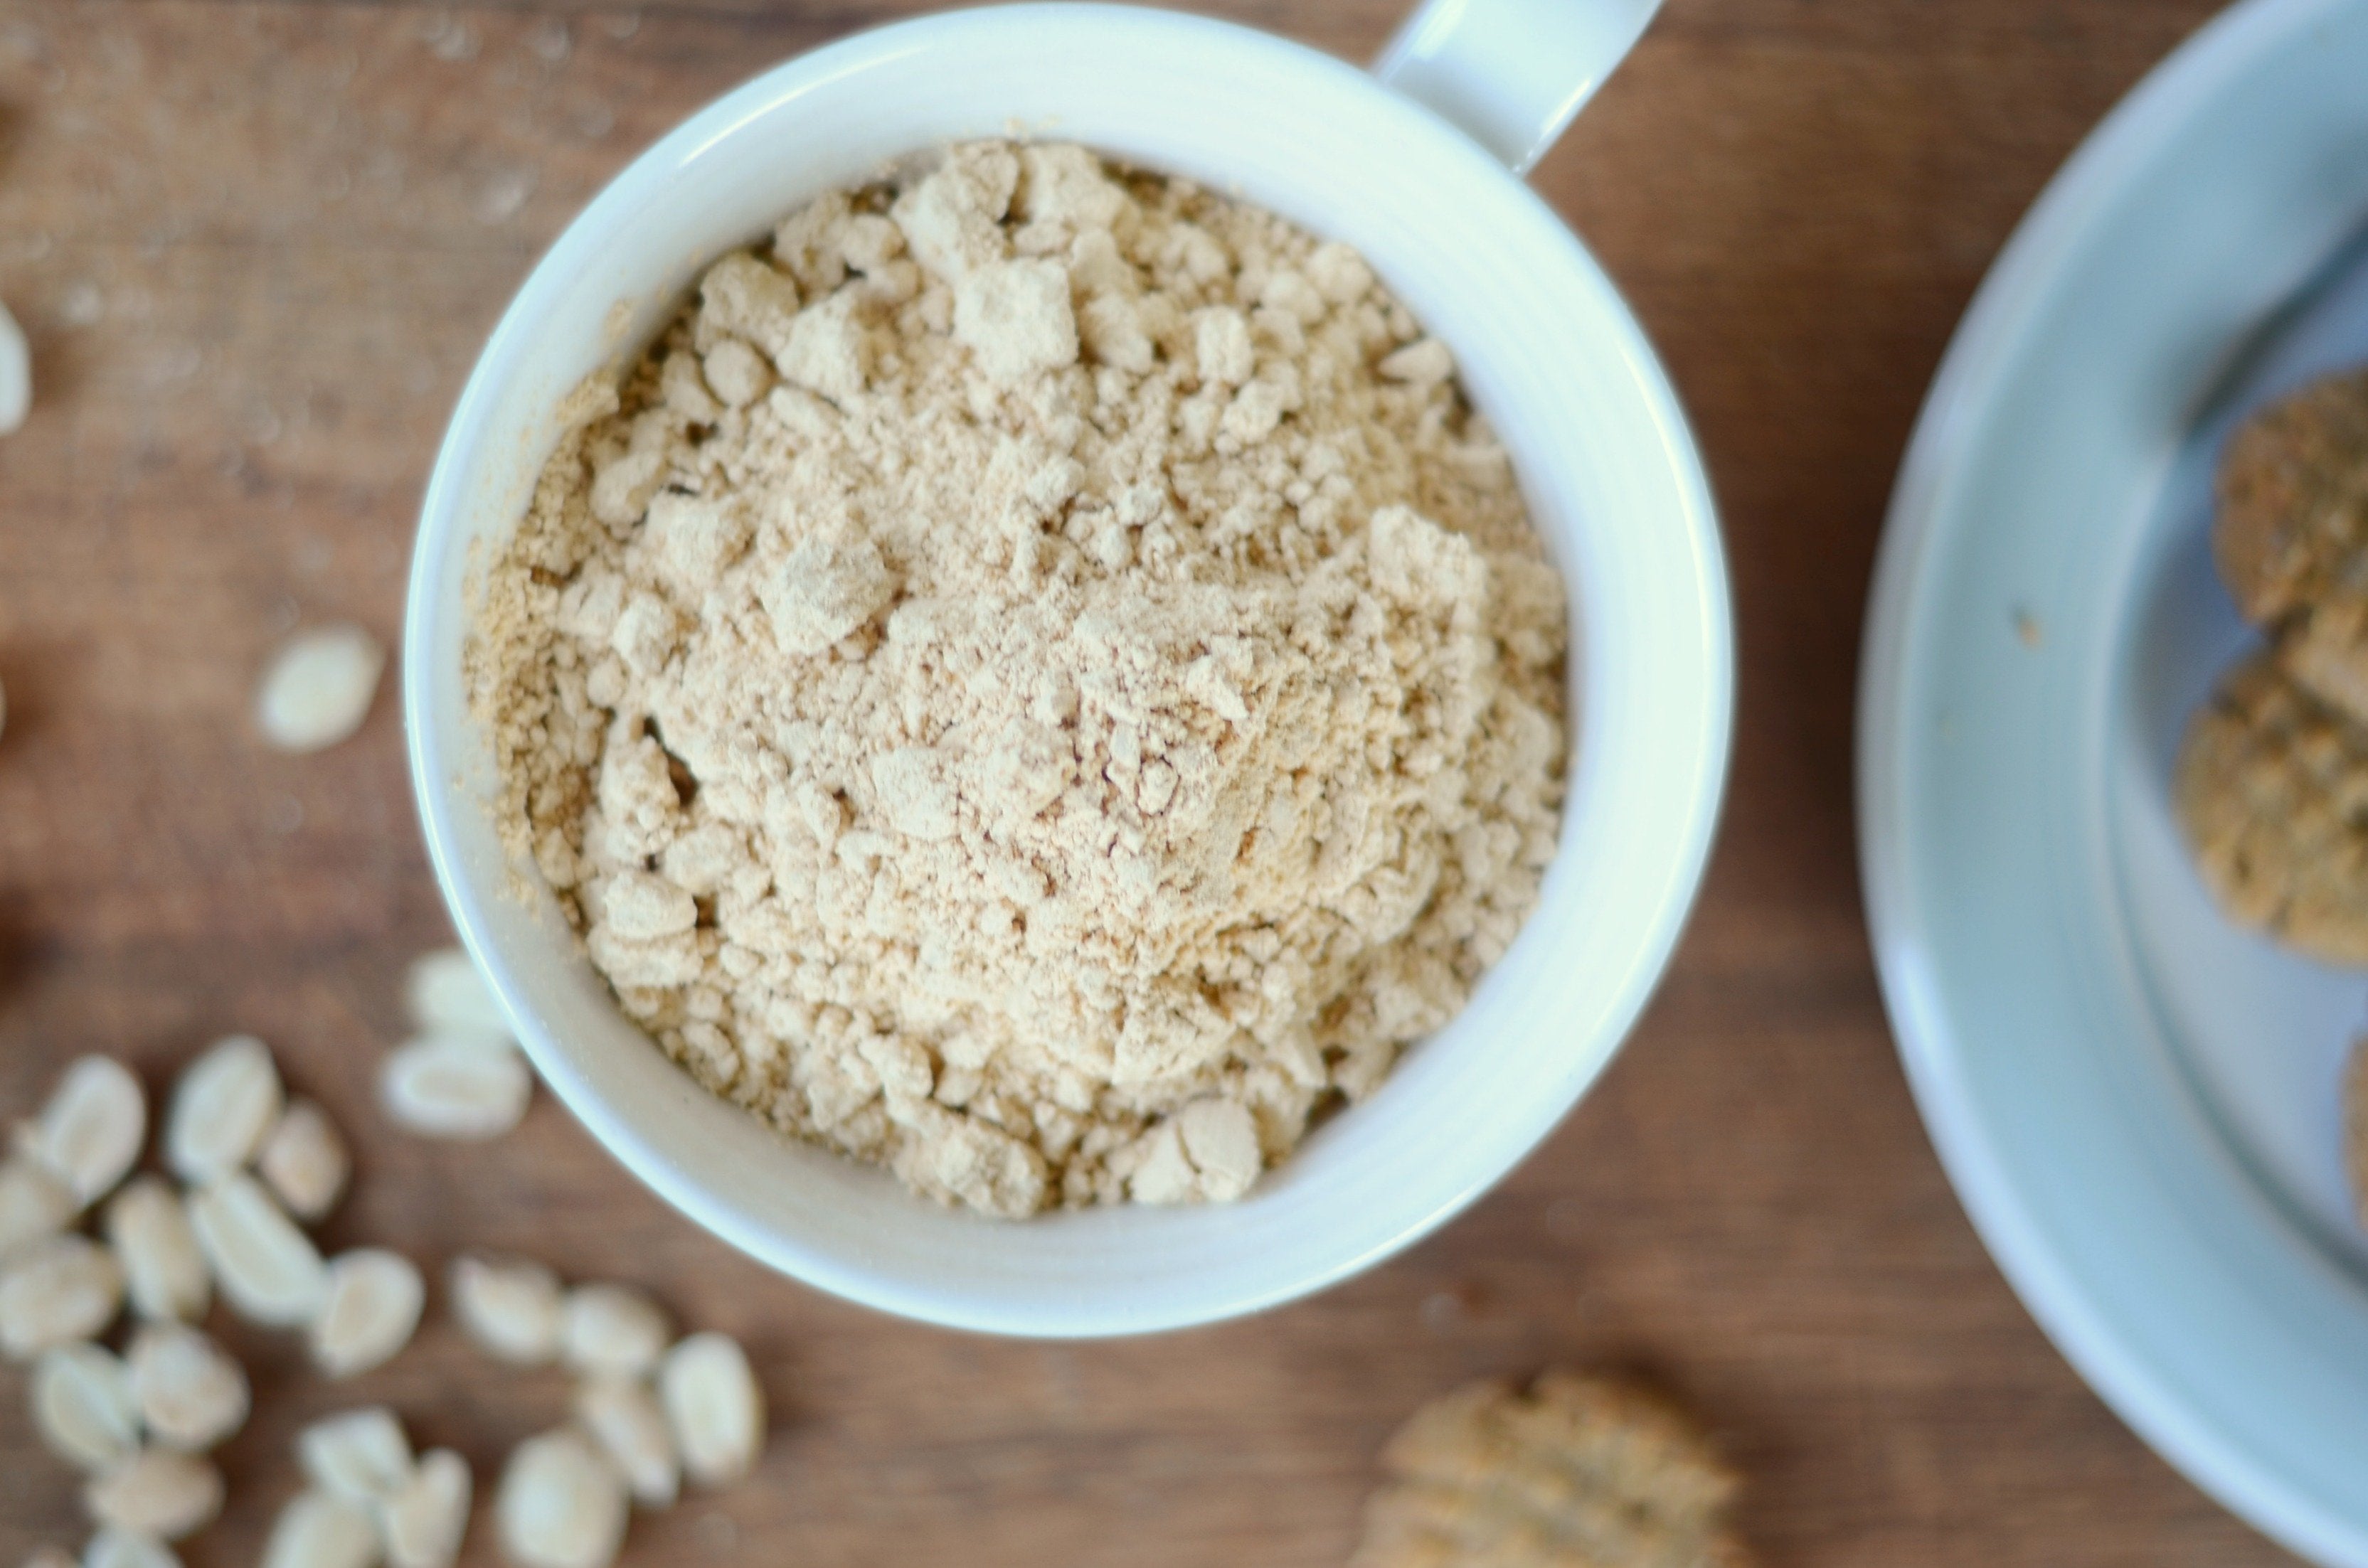 Organic Peanut Flour: Gluten-Free & Non-GMO